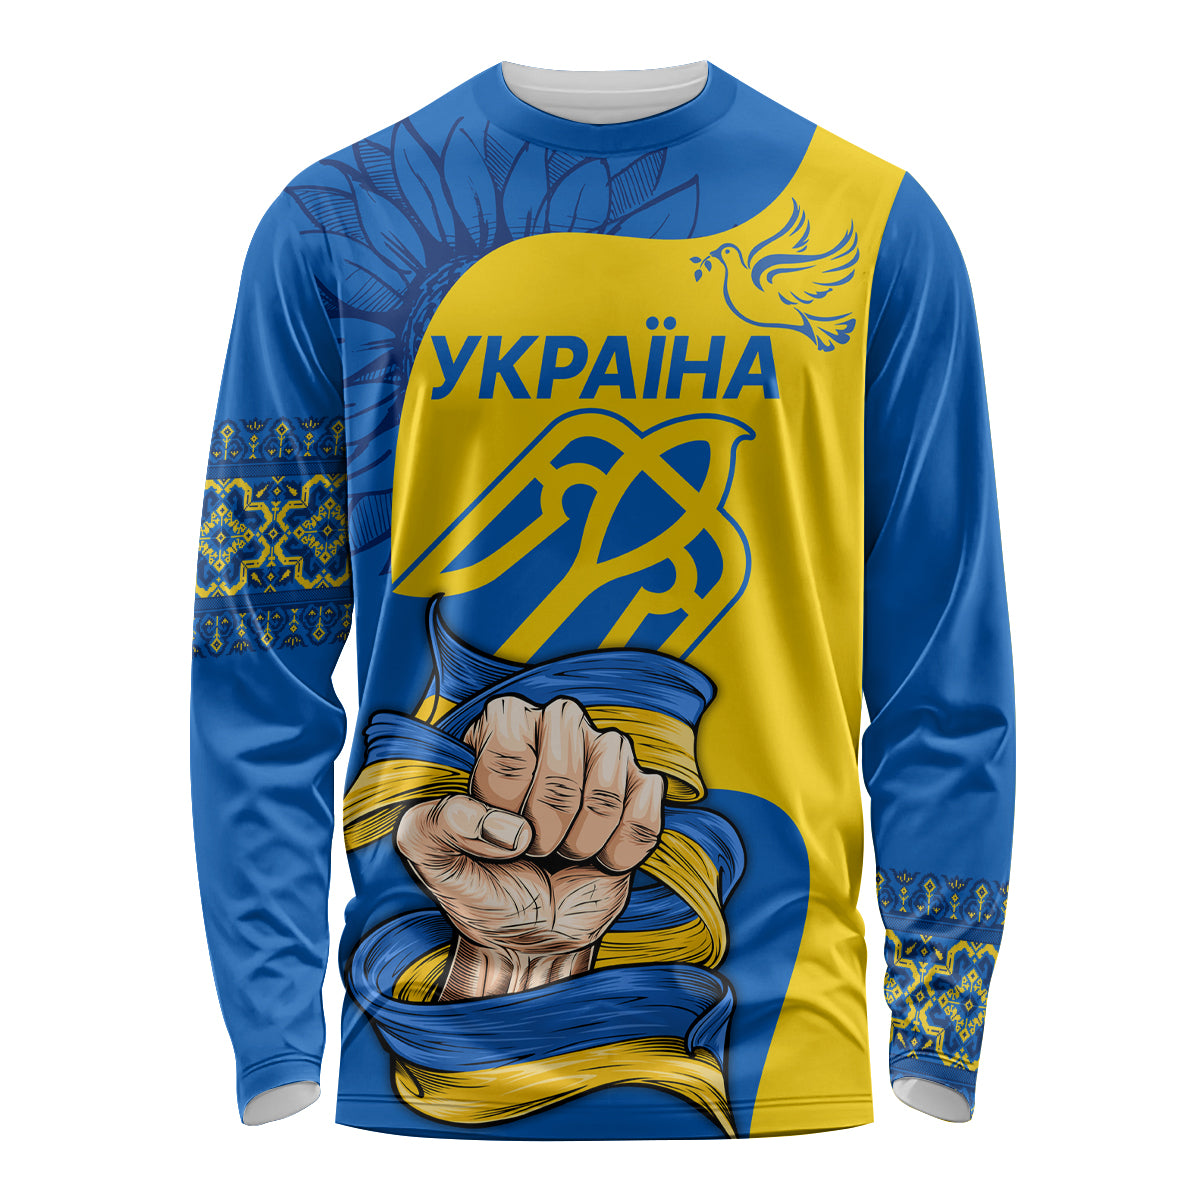 ukraine-ukraine-folk-patterns-unity-day-personalized-long-sleeve-shirt